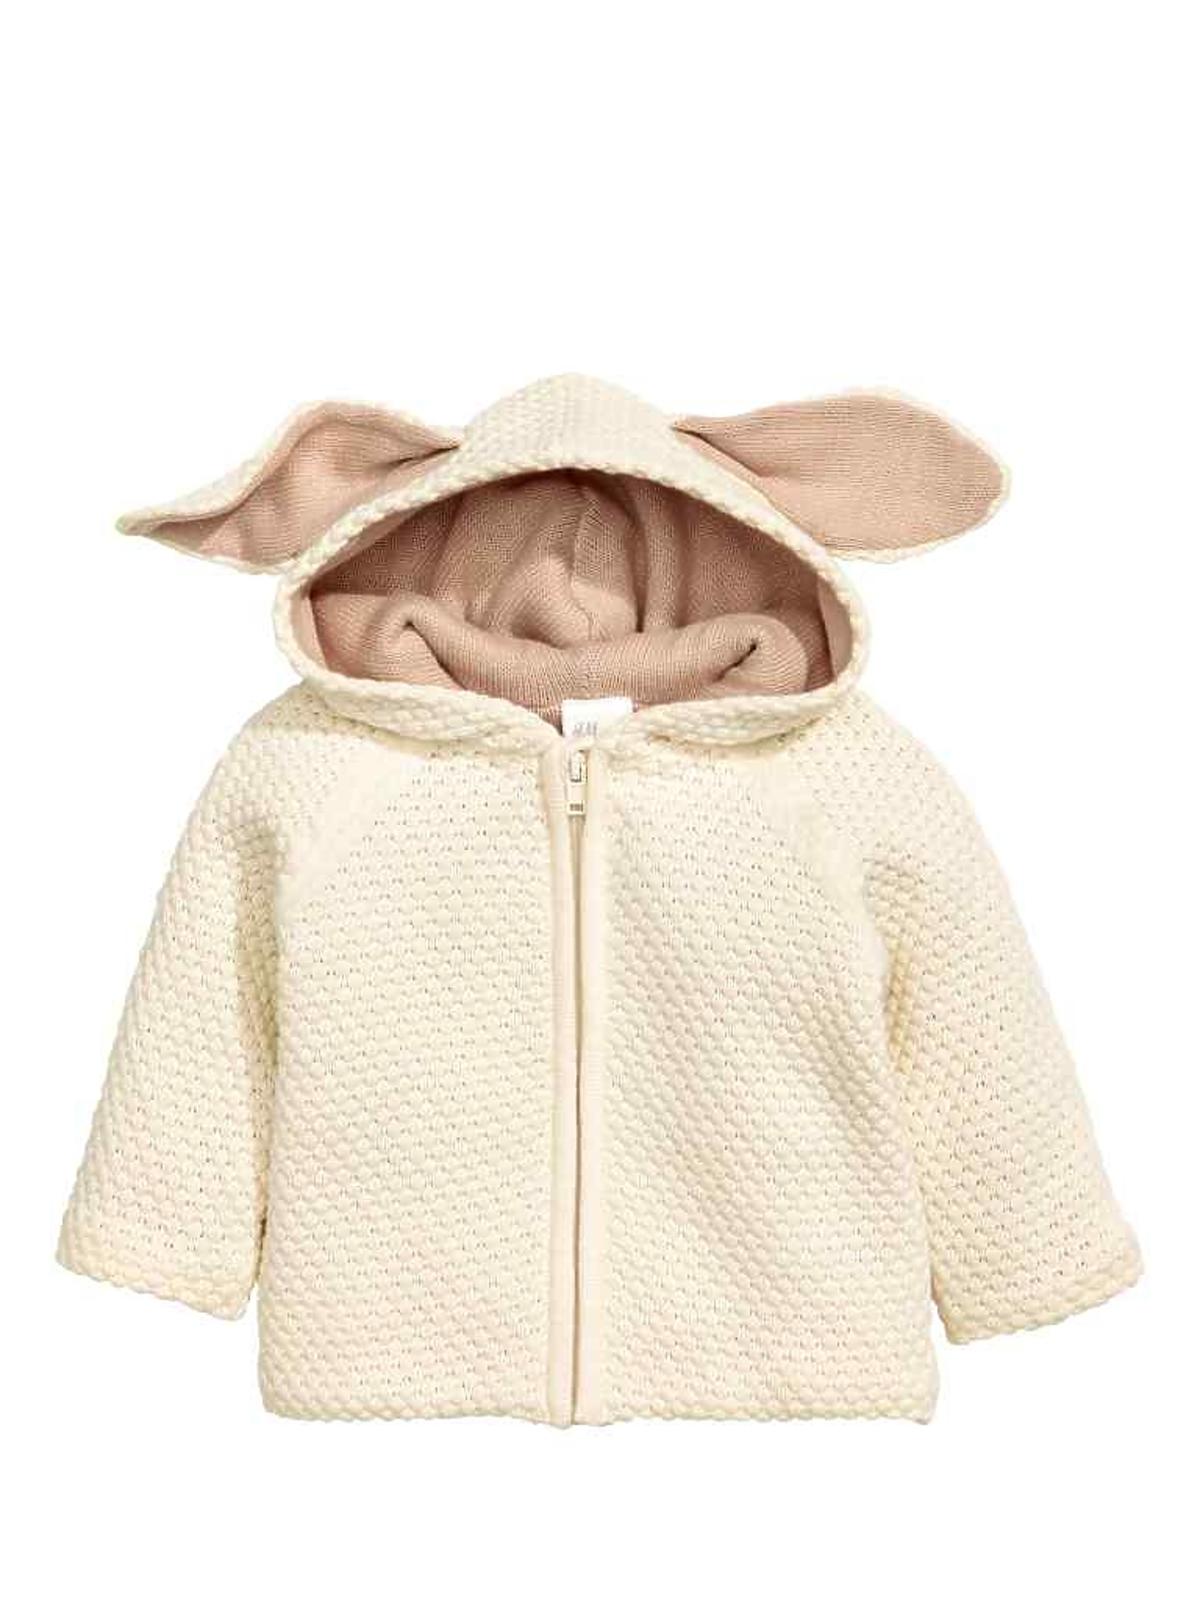 rozpinany sweter z uszkami dla niemowląt hm.com 99.90zł.jpg